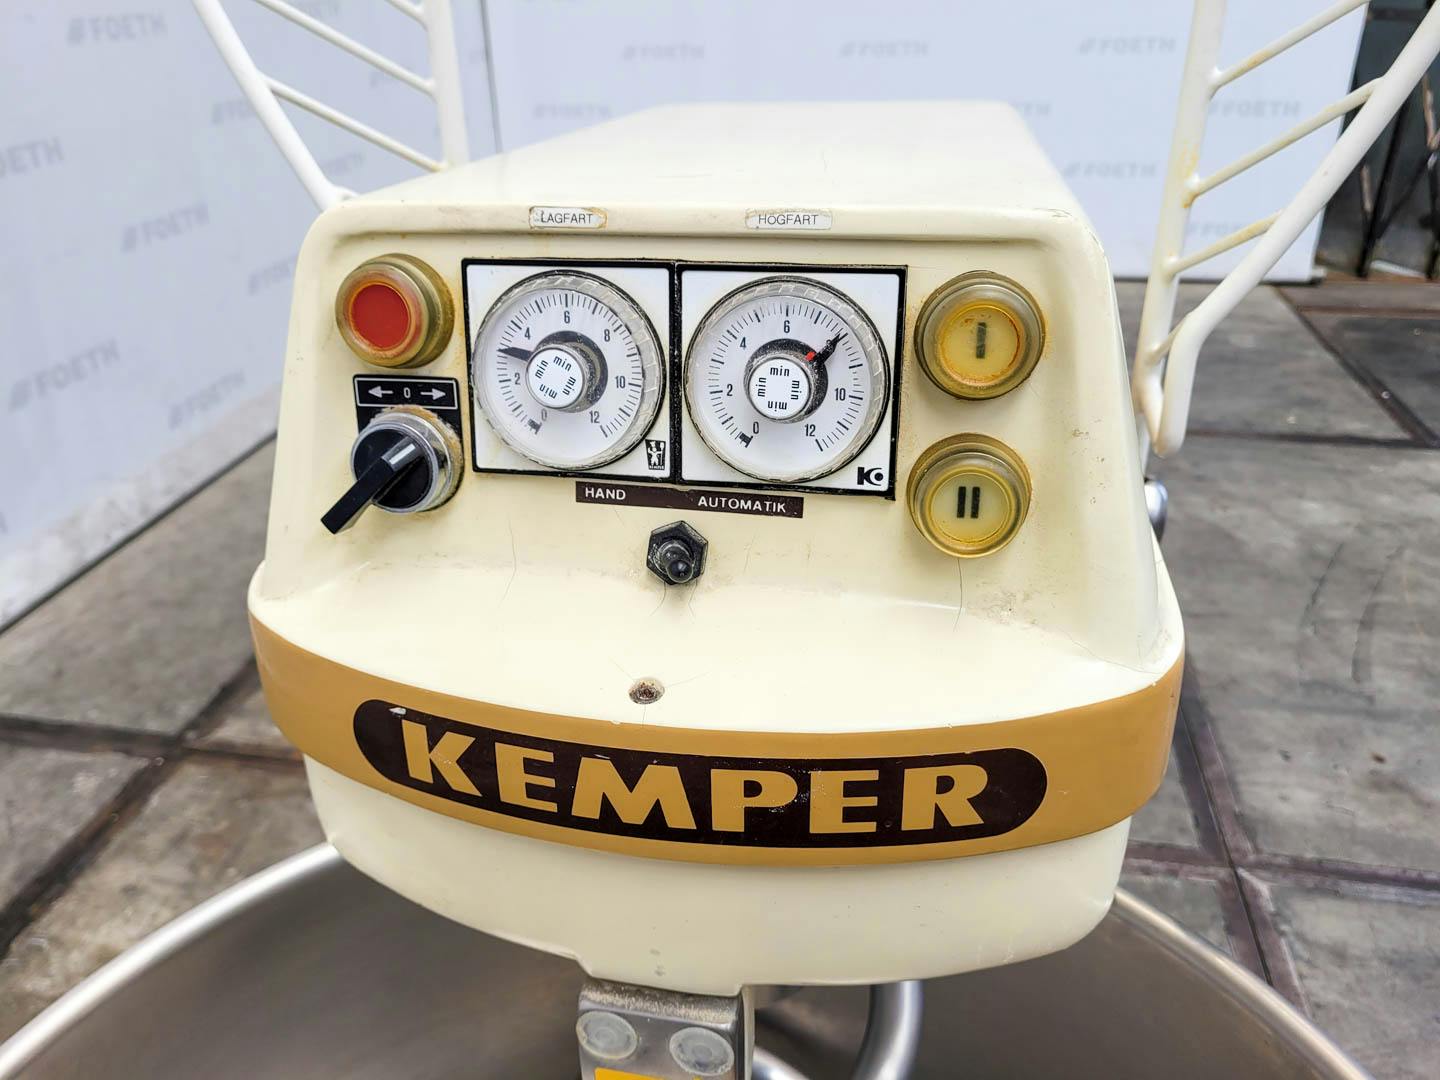 Kemper GmbH Spiral SP 50 L - Mezclador planetario - image 6